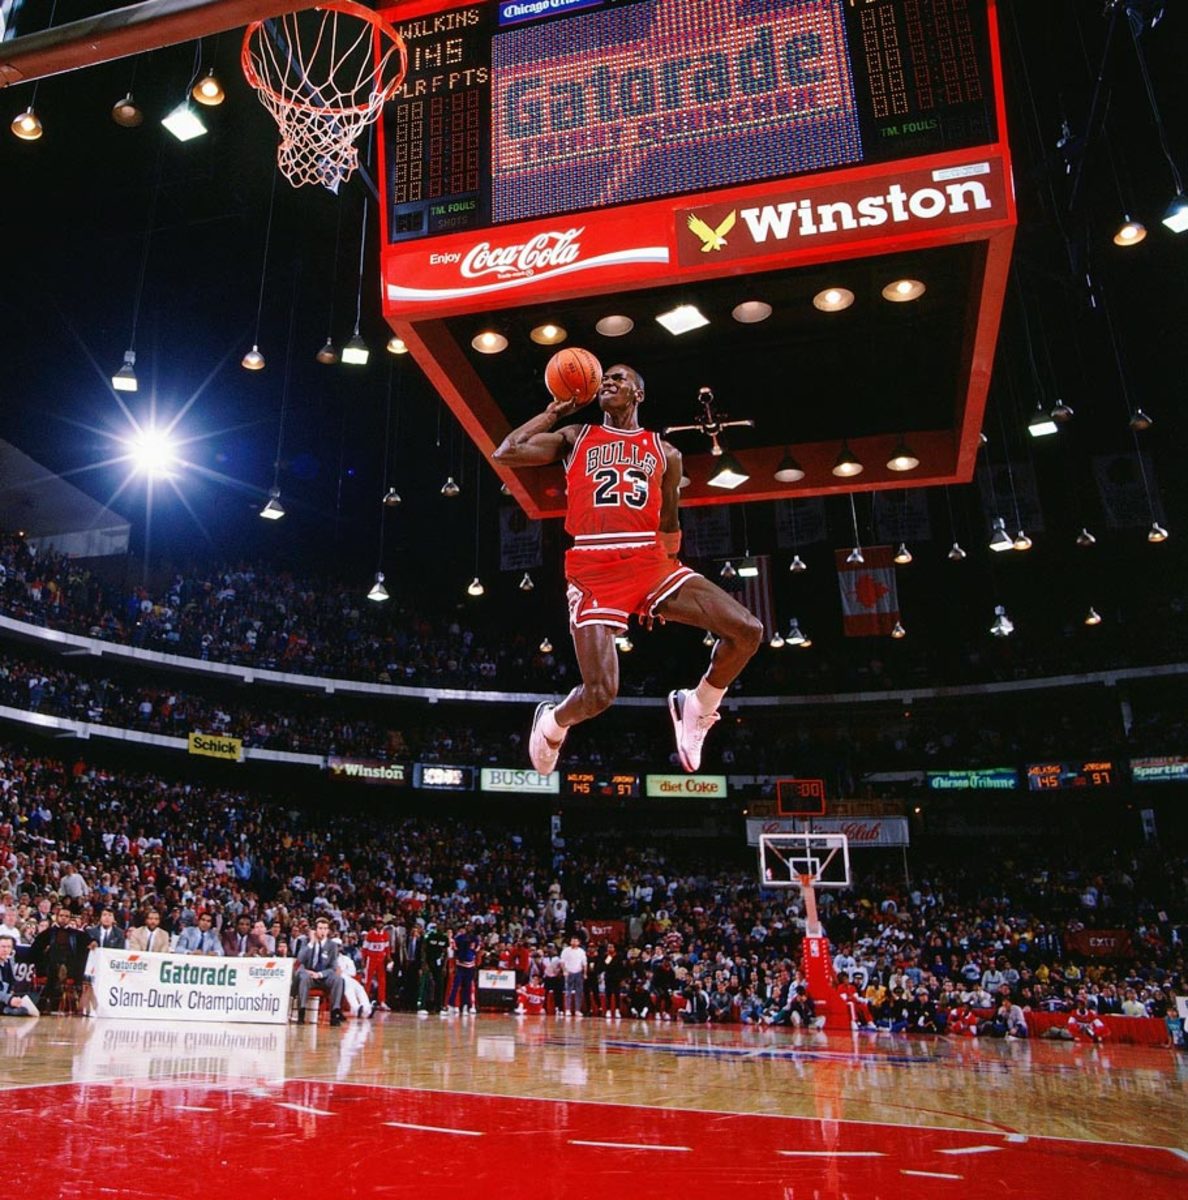 PHOTOS: A look at Michael Jordan's career highlights